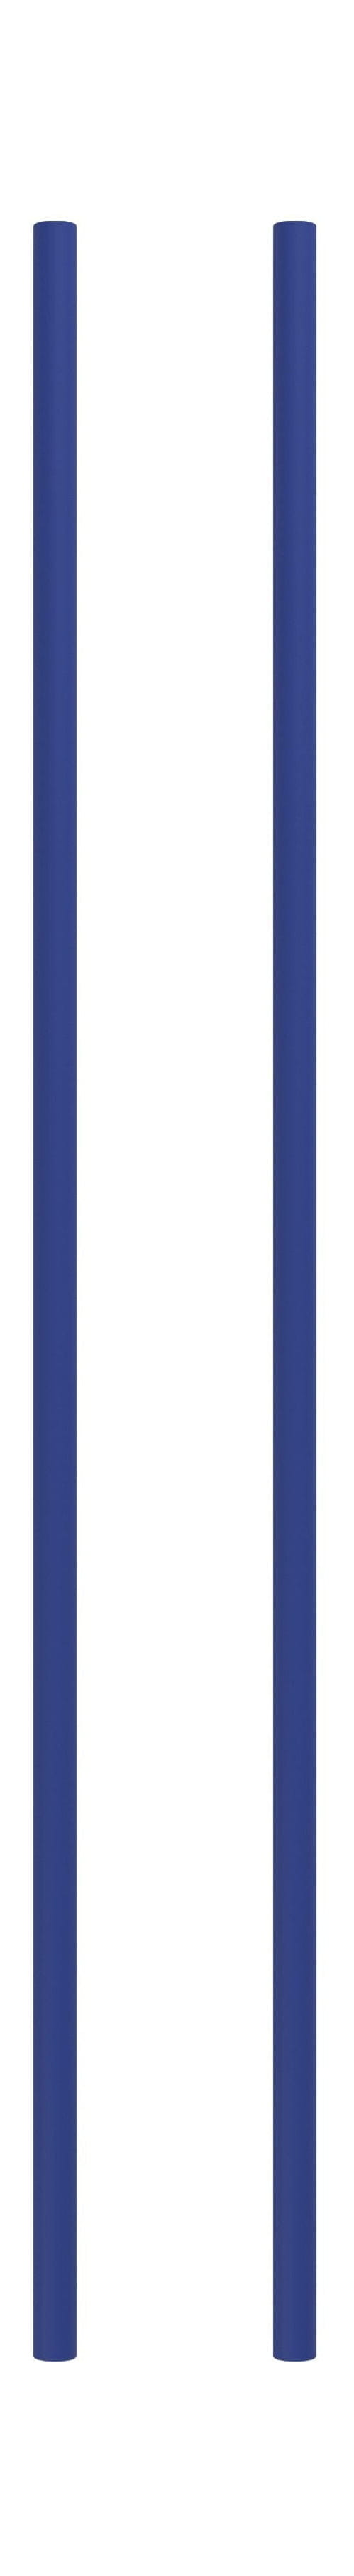 Moebe Système de étagères / étagères murales jambe de 85 cm bleu de profondeur, ensemble de 2